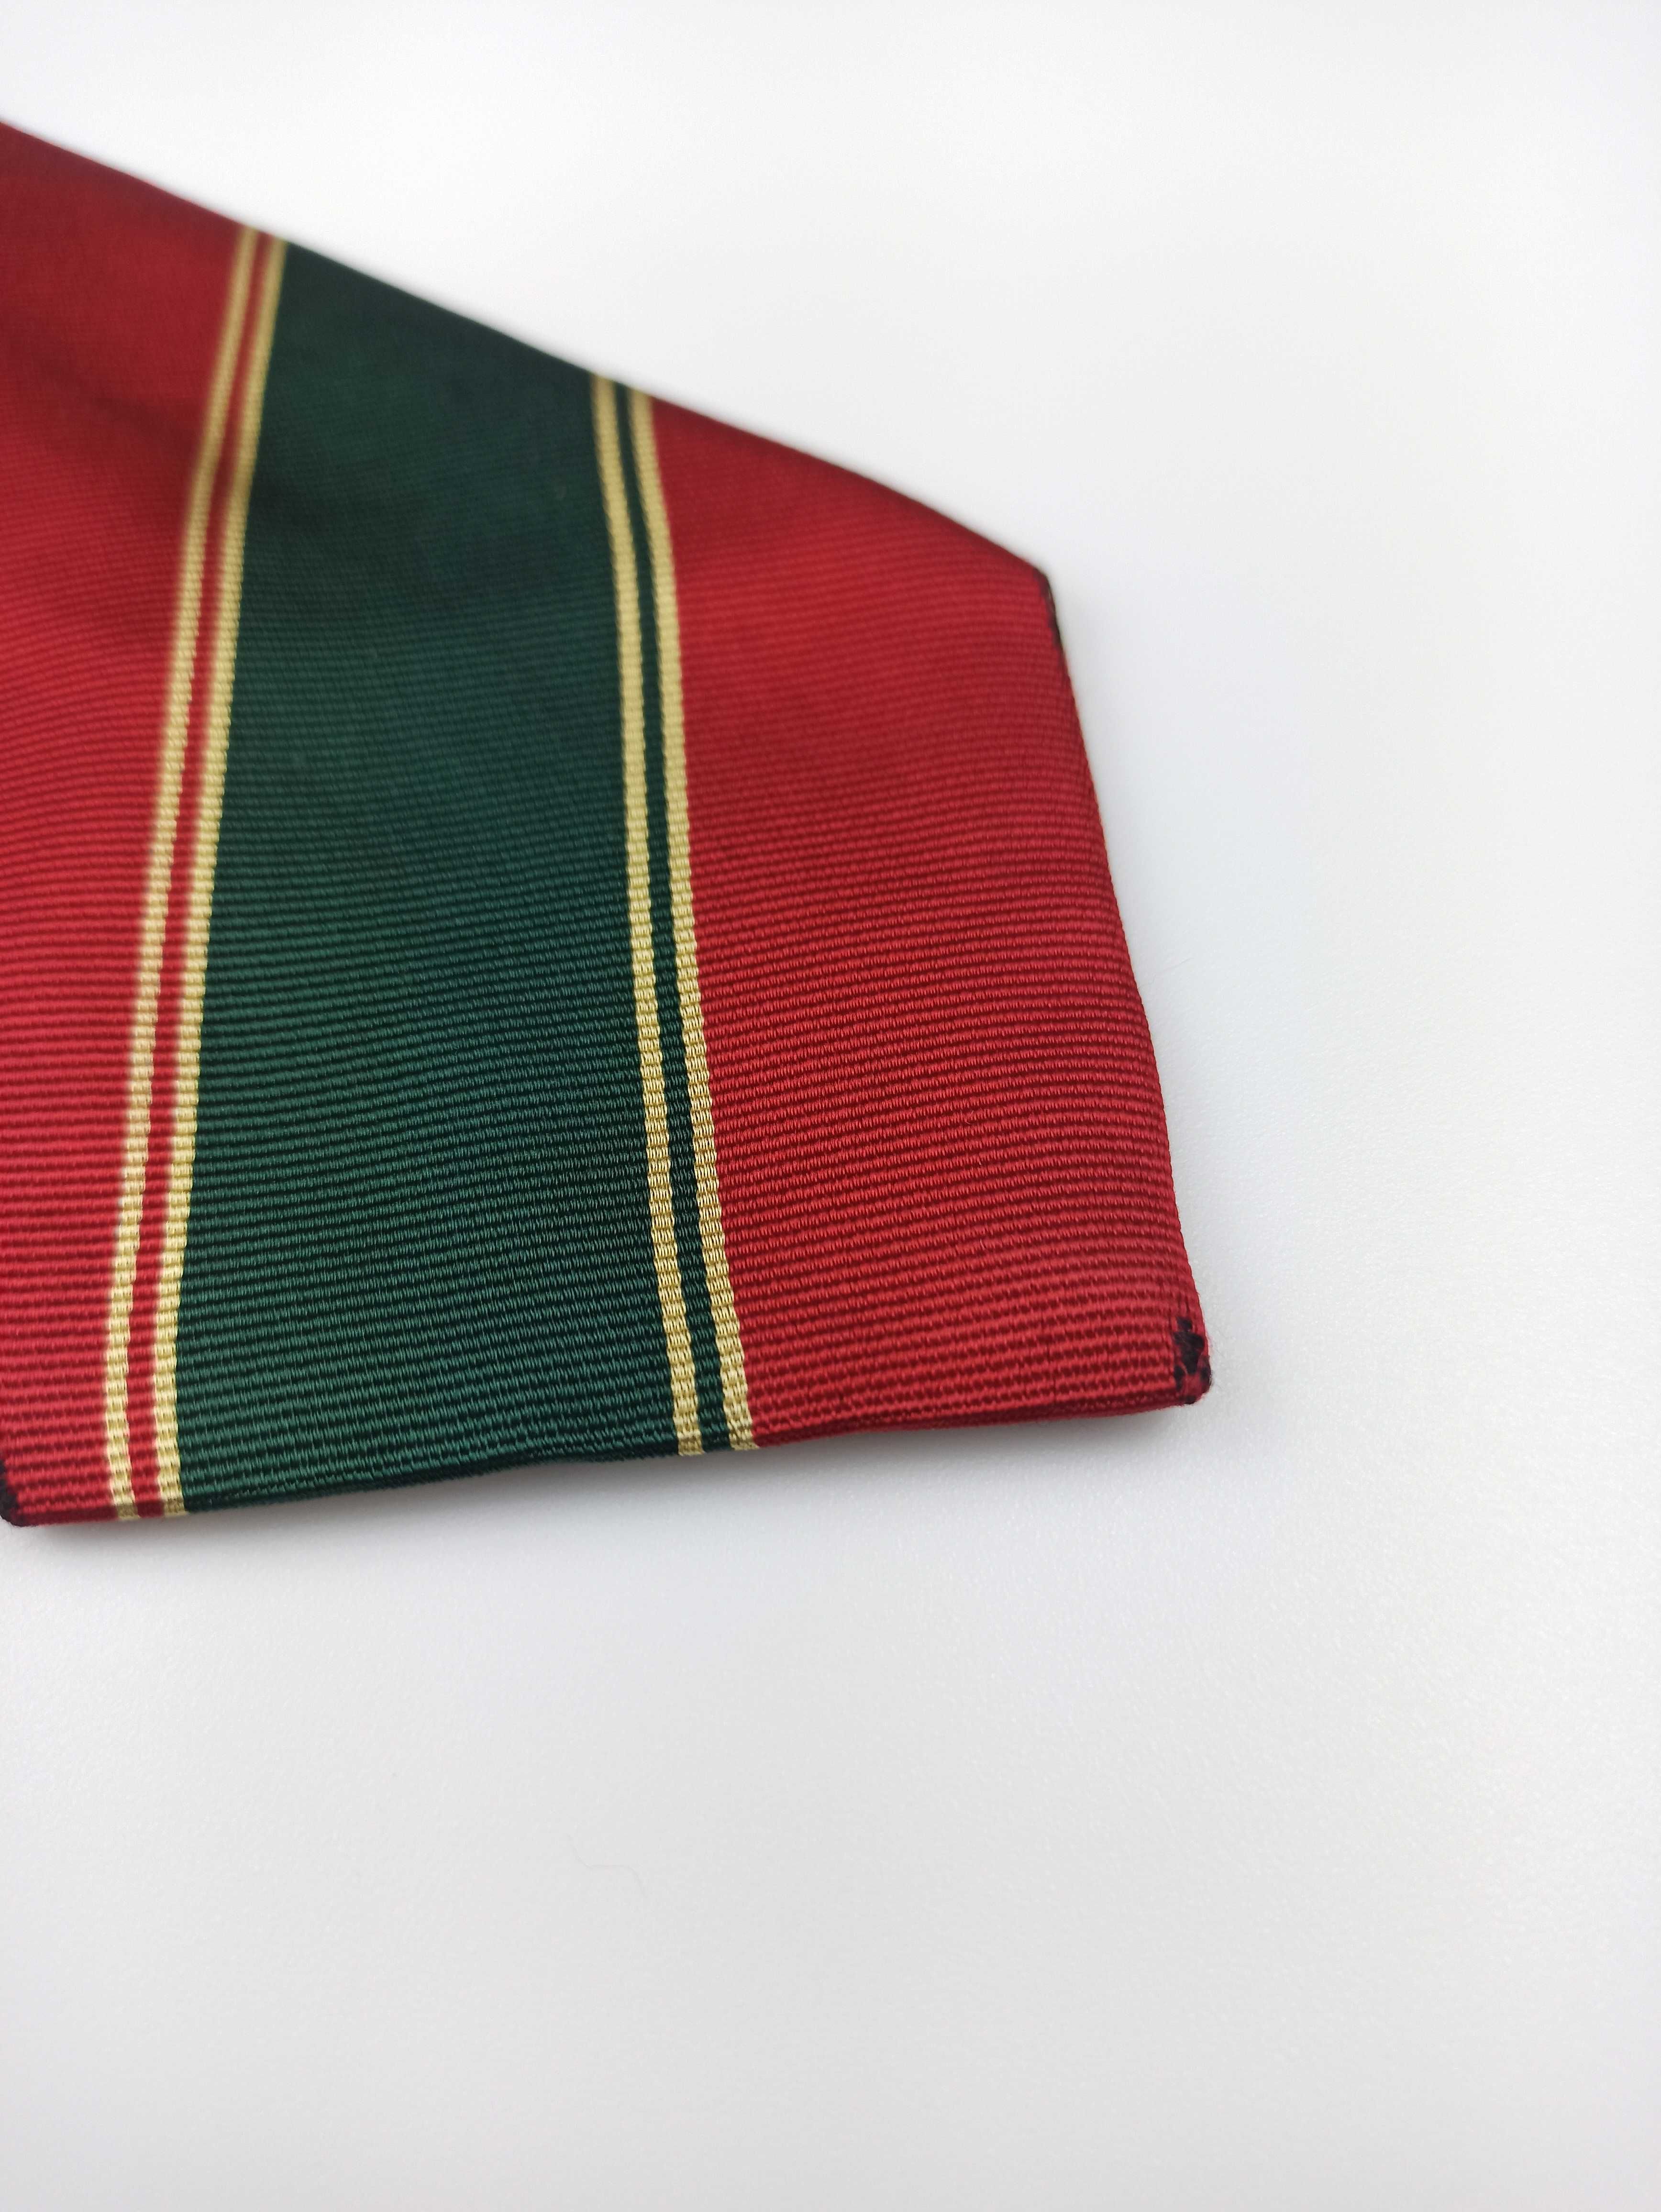 Cerutti 1881 czerwony jedwabny krawat w paski f12